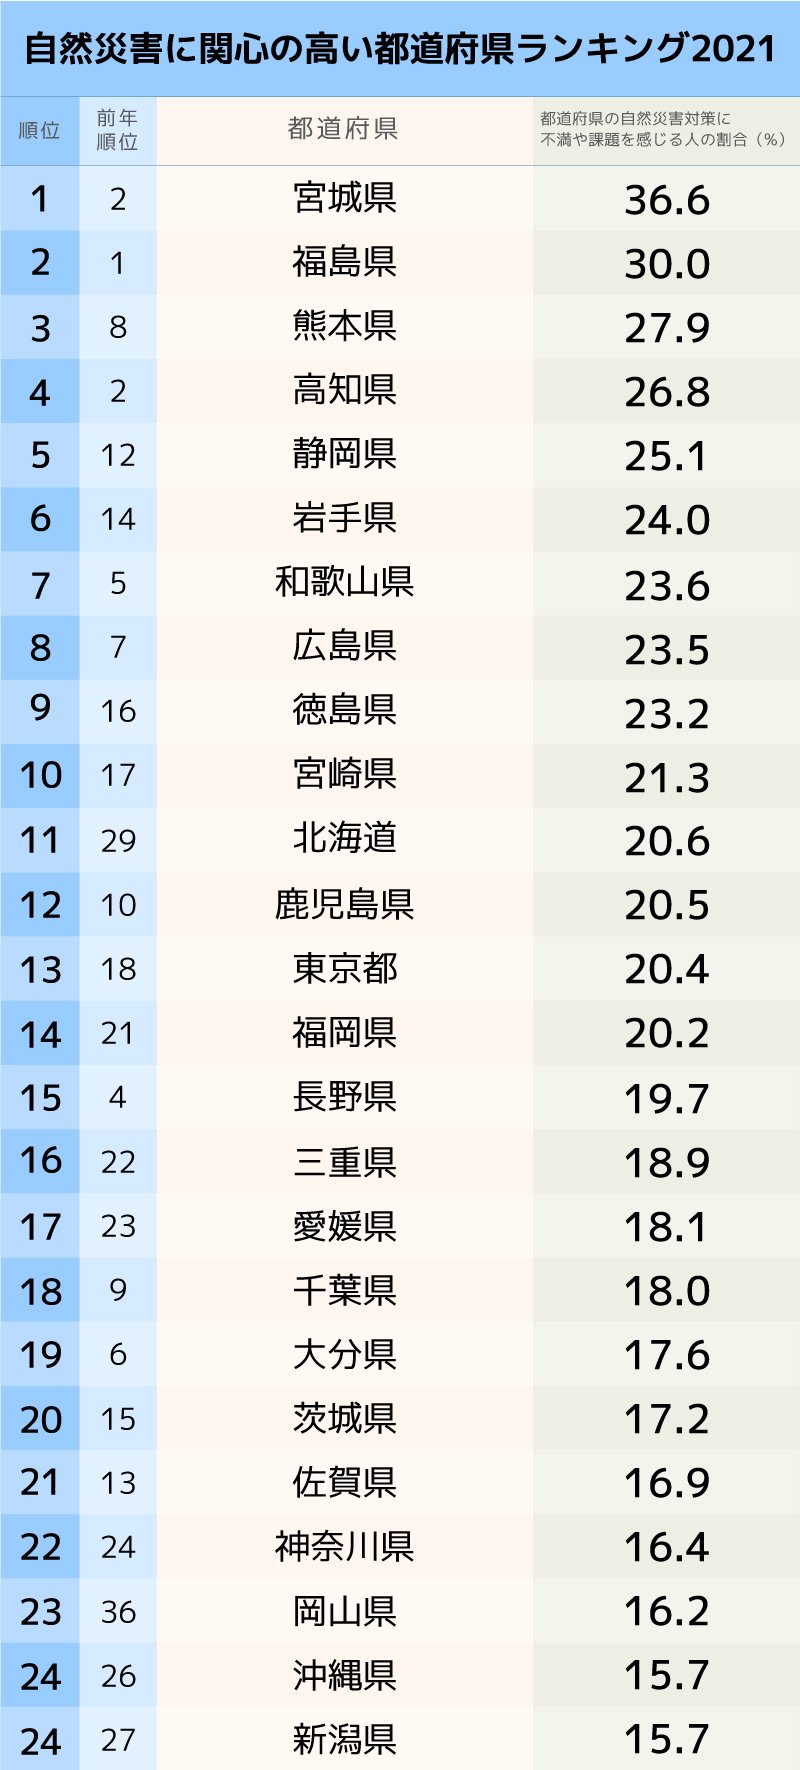 自然災害に関心の高い 都道府県ランキング 21完全版 日本全国sdgs調査ランキング ダイヤモンド オンライン